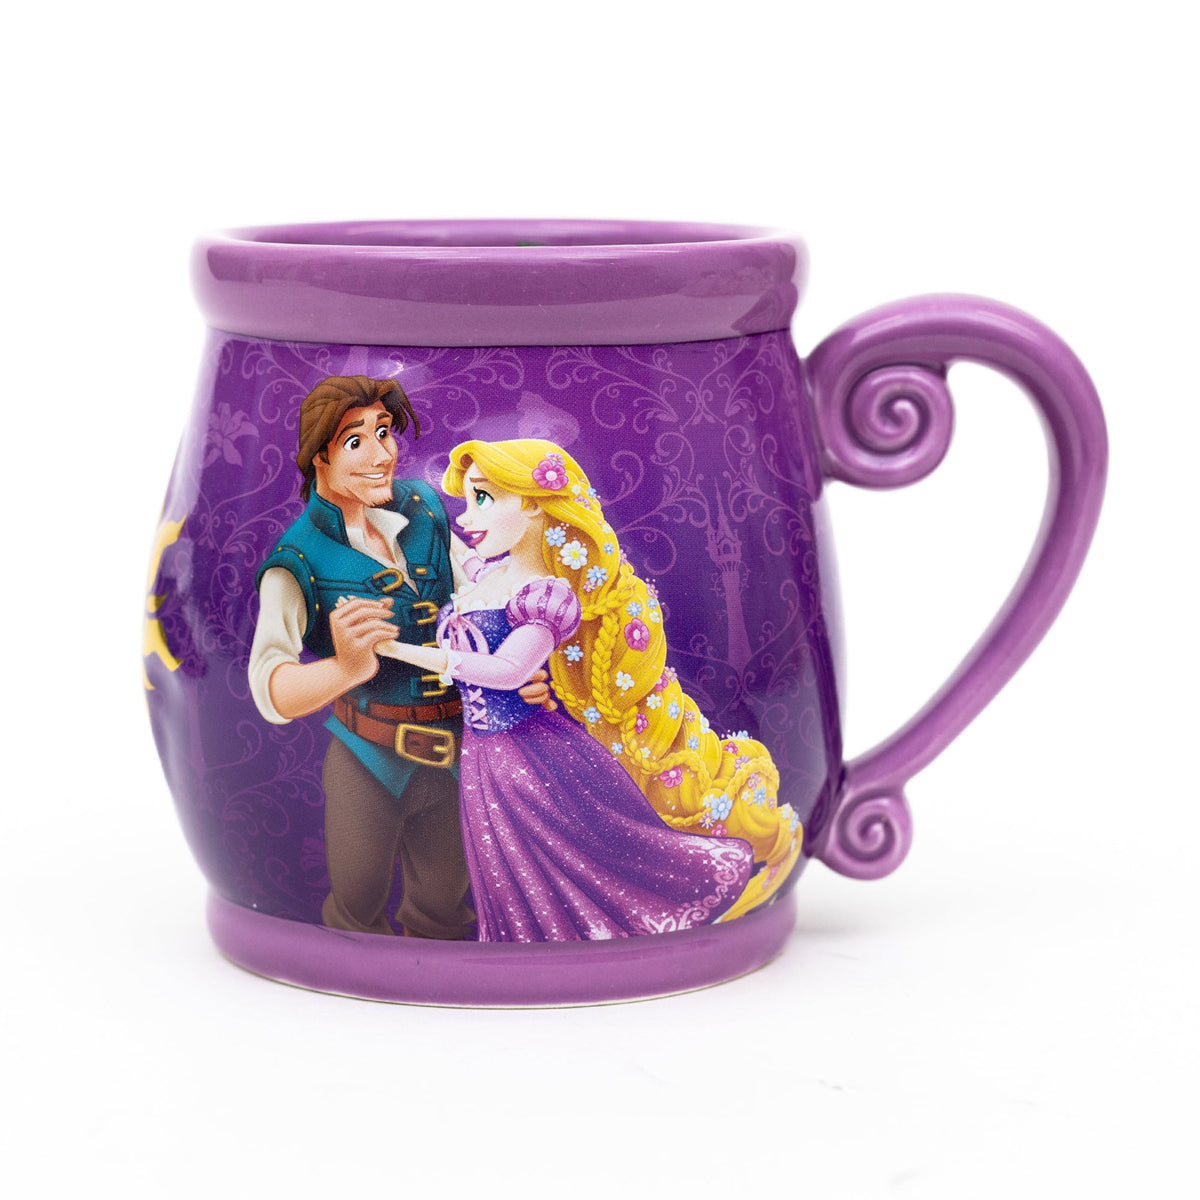 Disney Princess Stories Series 5/12 Tangled Rapunzel Ceramic Relief Mug 19oz